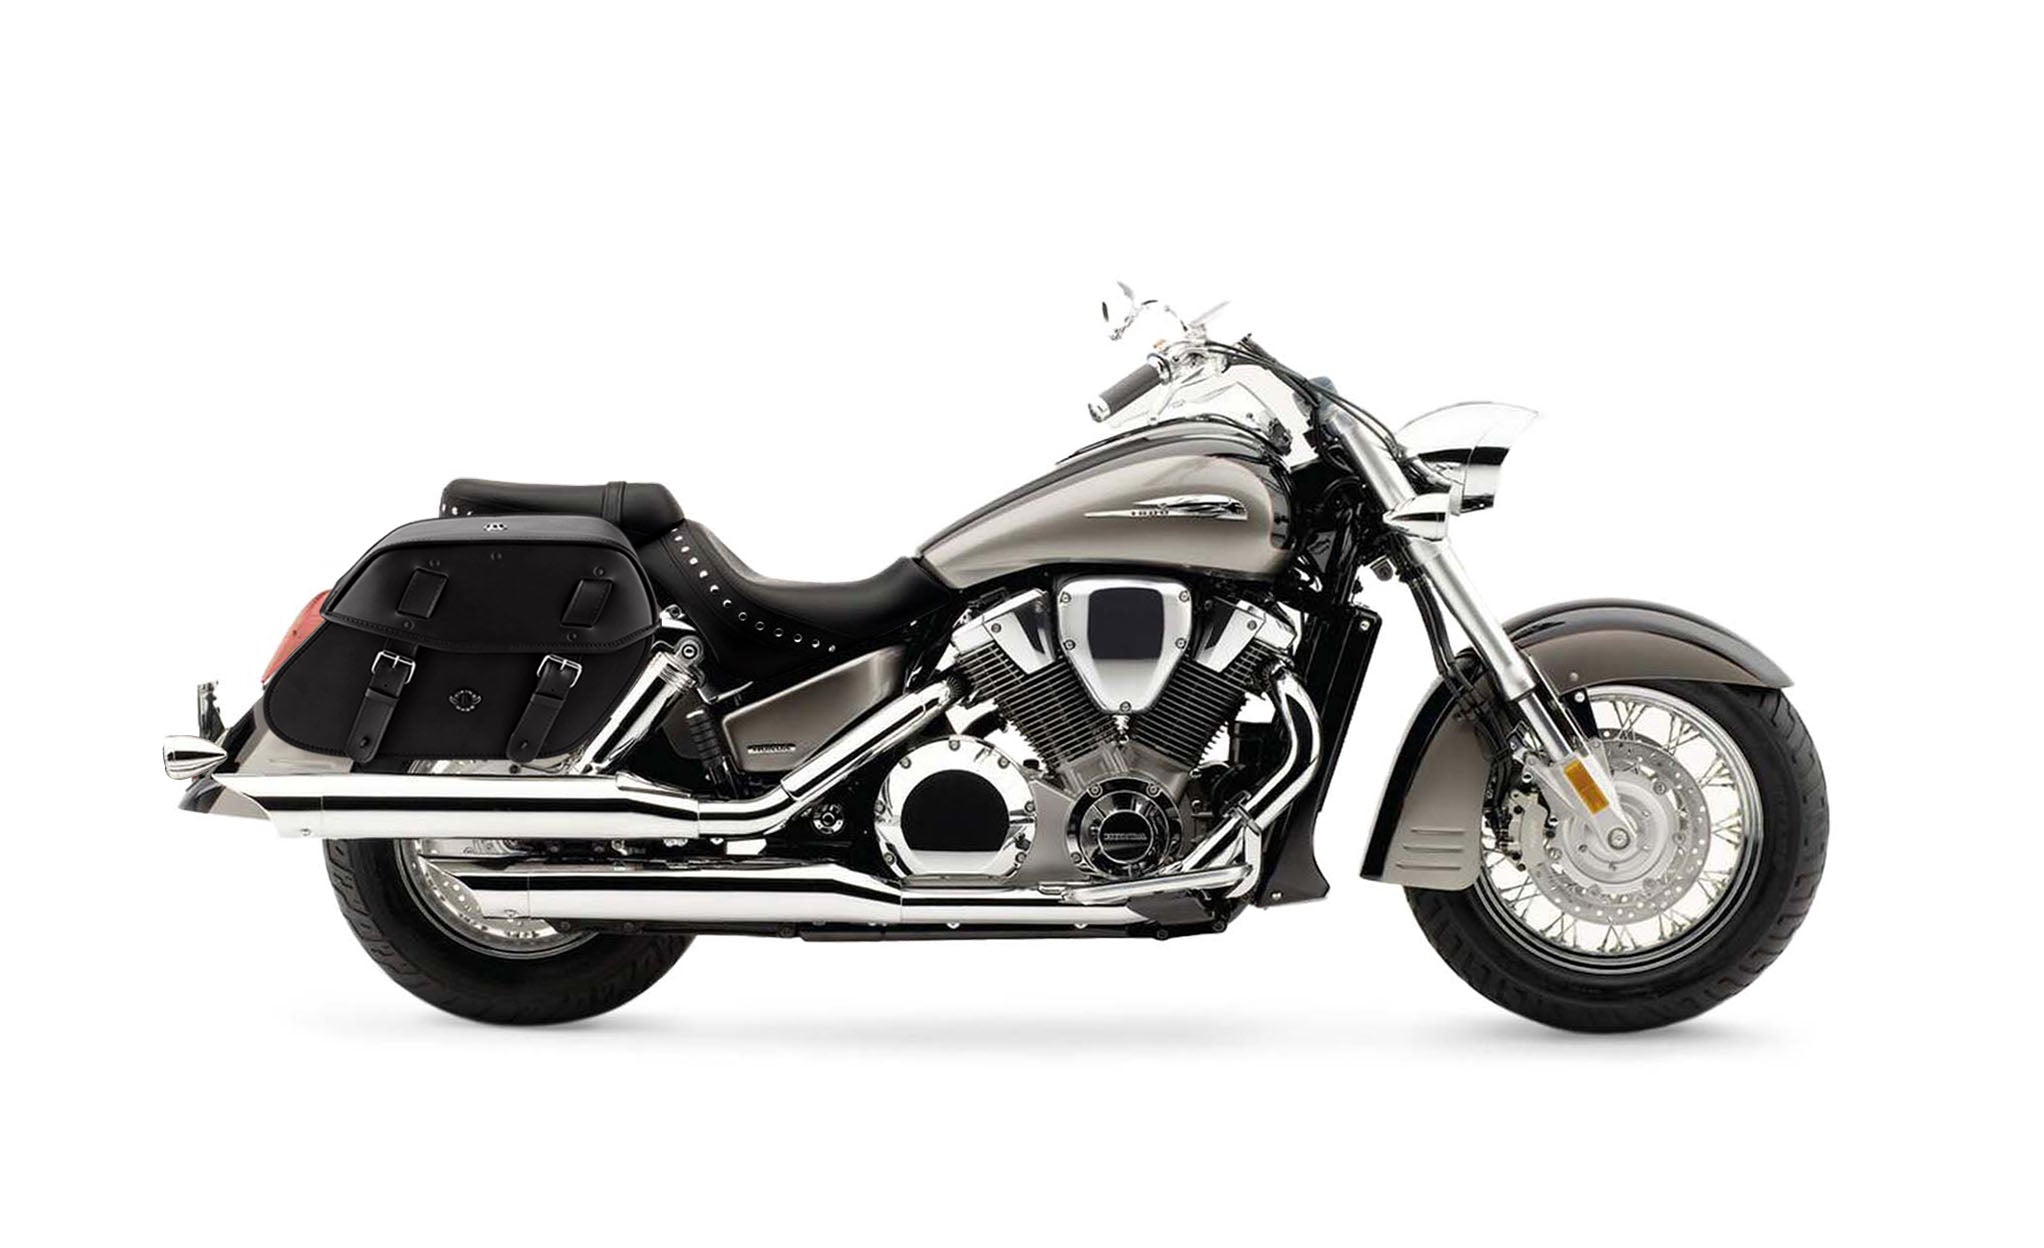 Viking Odin Large Honda Vtx 1800 S Leather Motorcycle Saddlebags on Bike Photo @expand